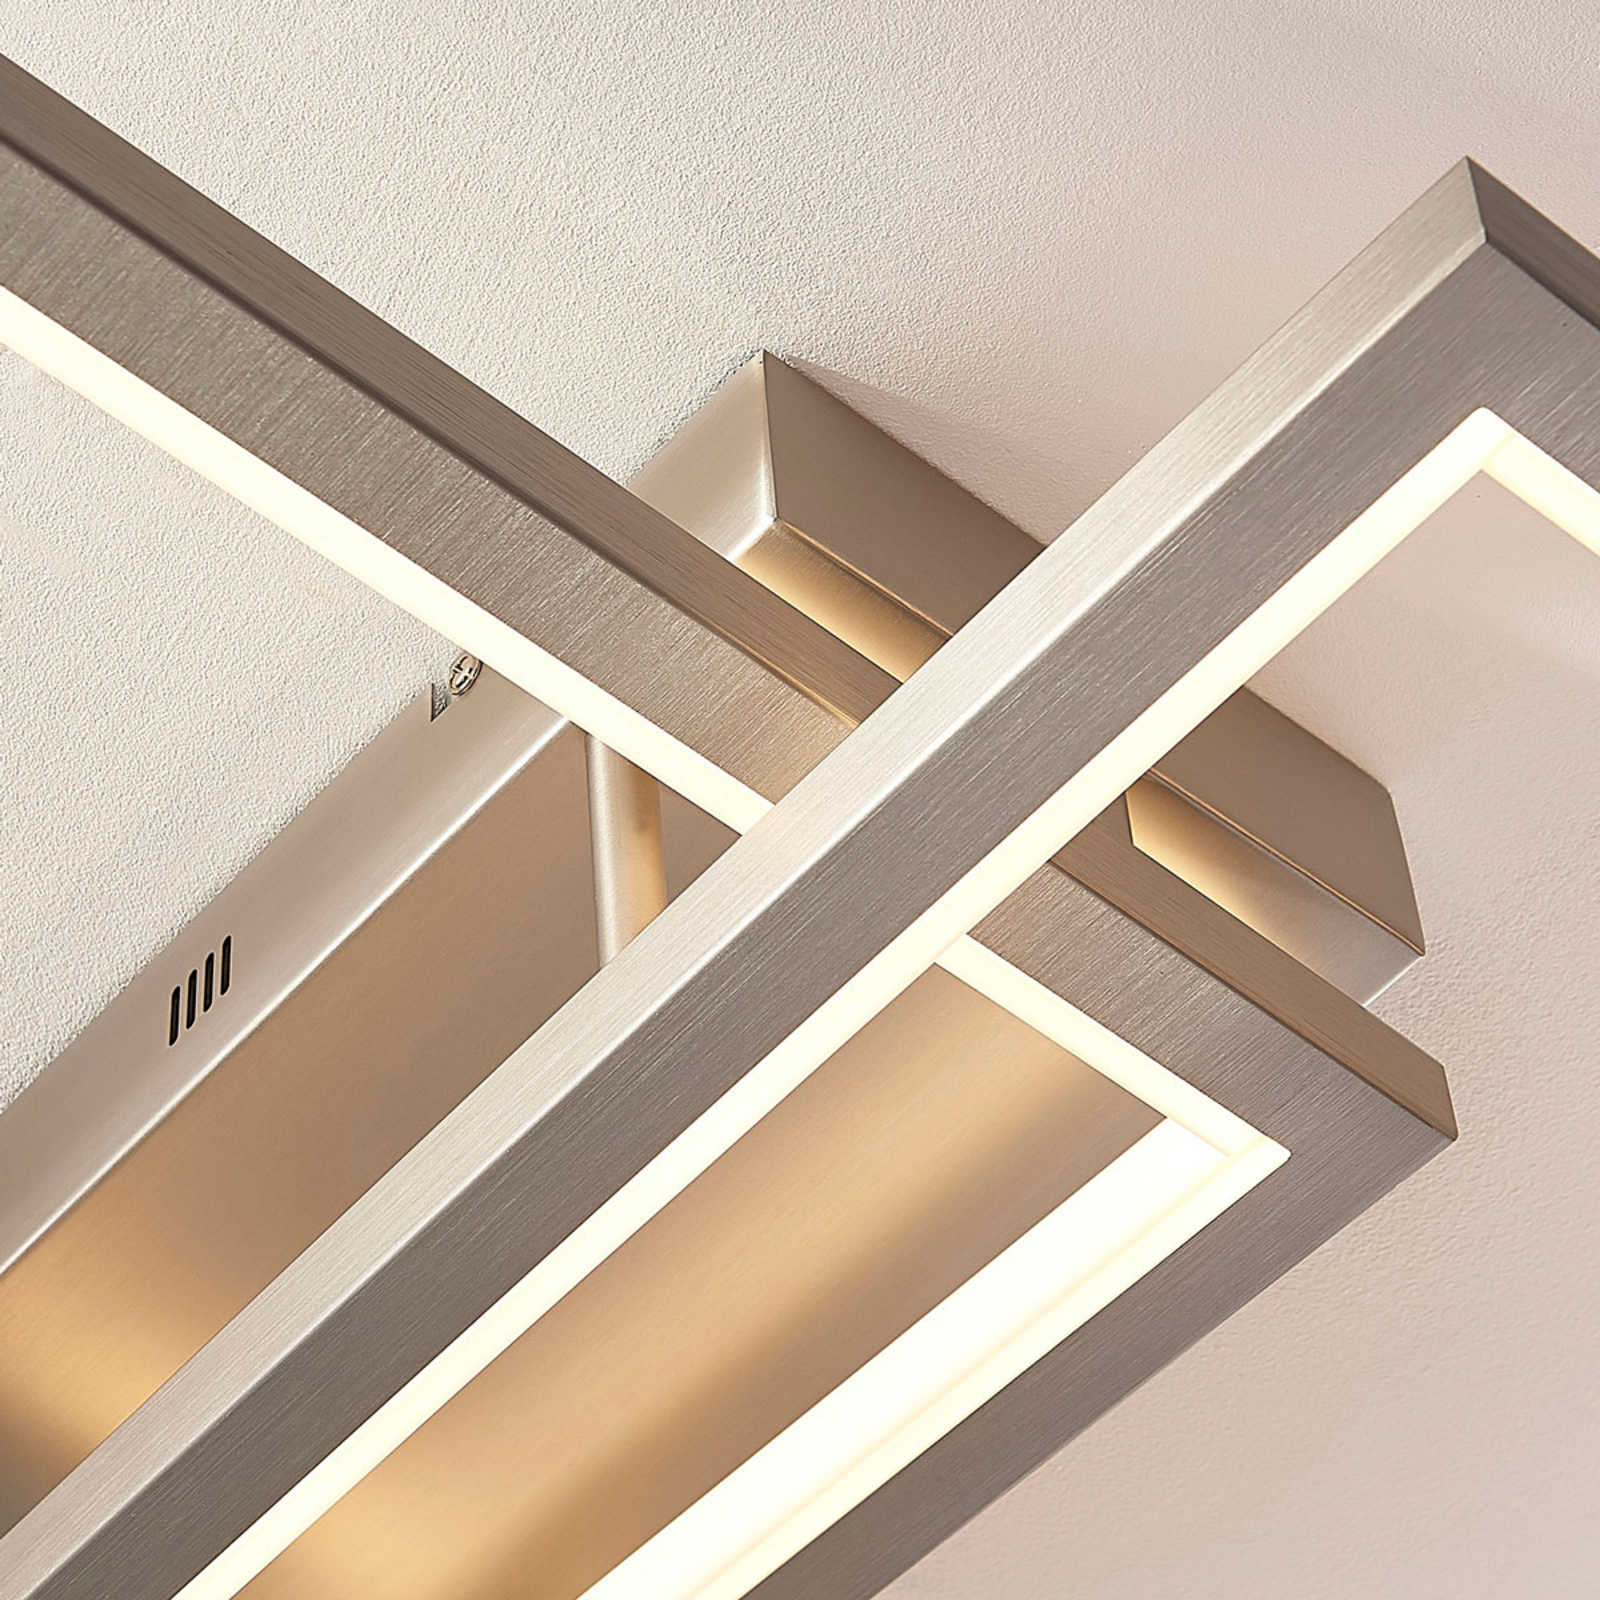 LED plafondlamp Heriba met twee frames, dimbaar